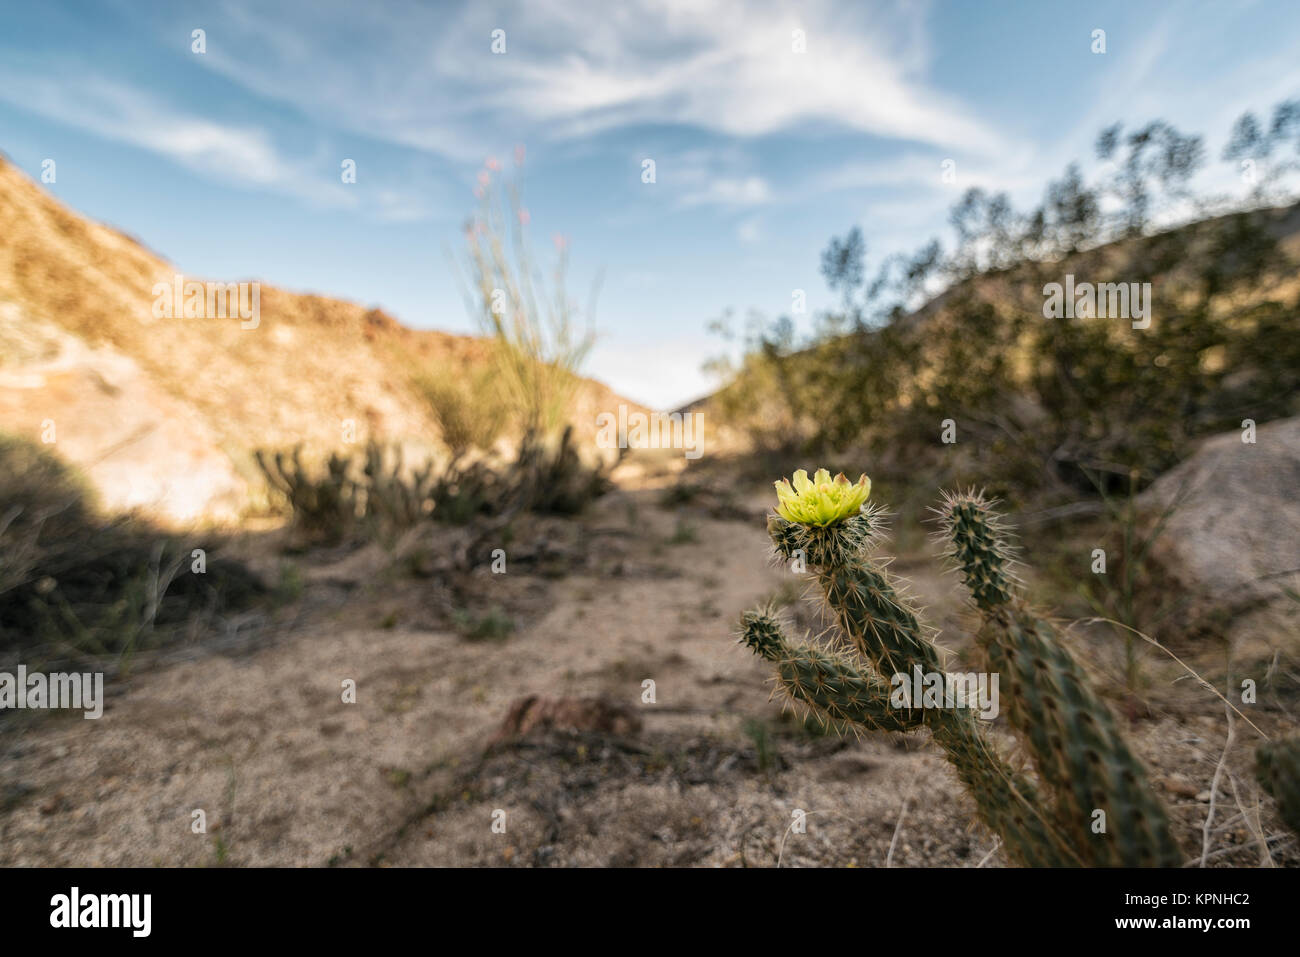 Piante del deserto in stato Anza-Borrego Park, California, Stati Uniti d'America Foto Stock